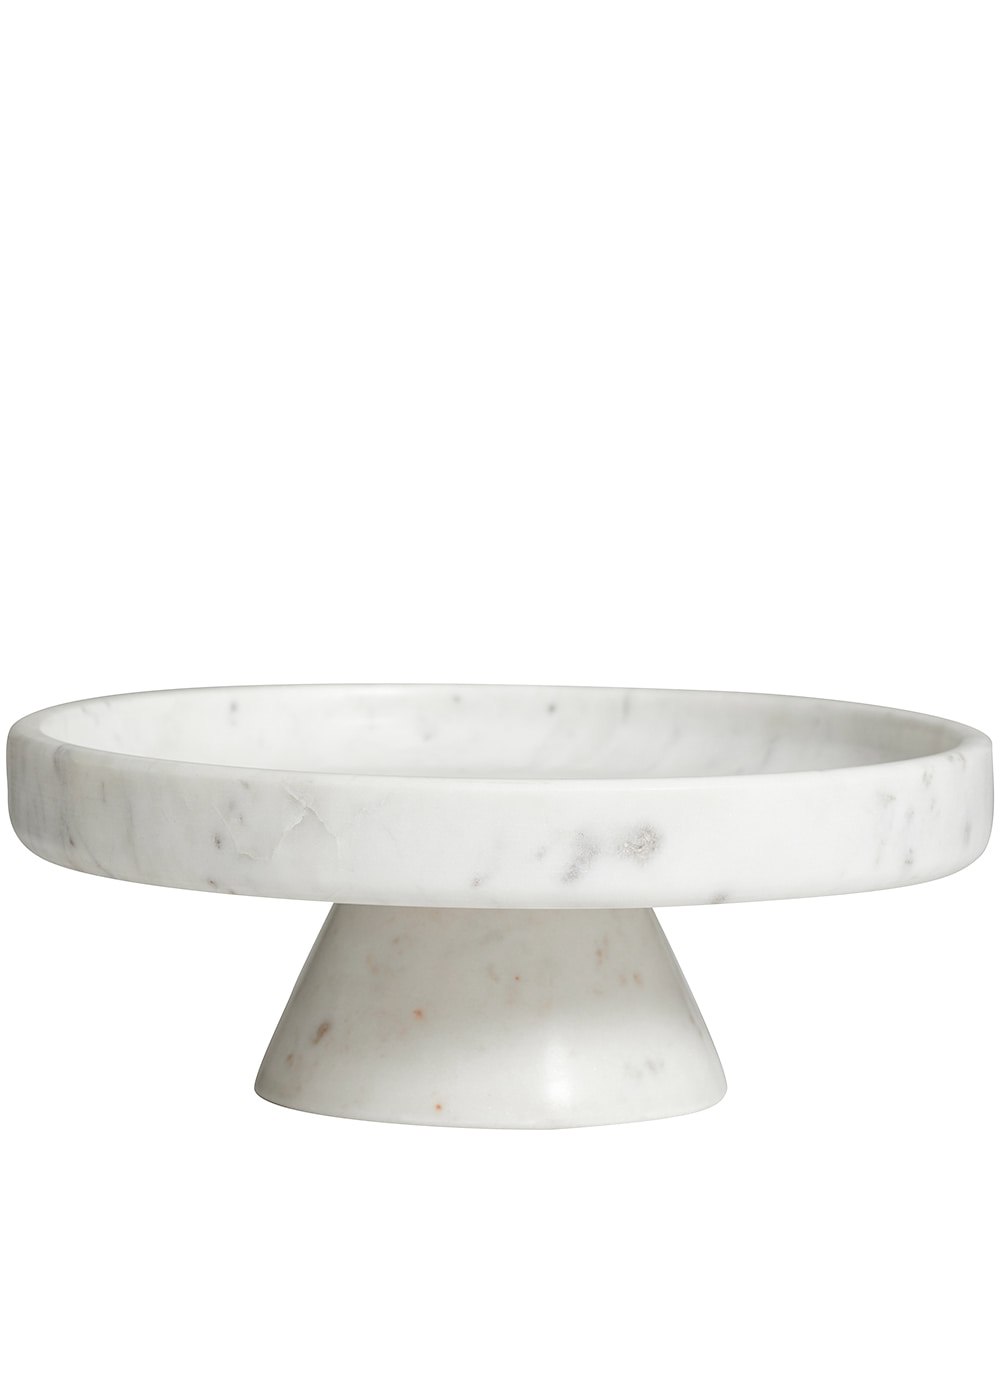 dish on base, white marble